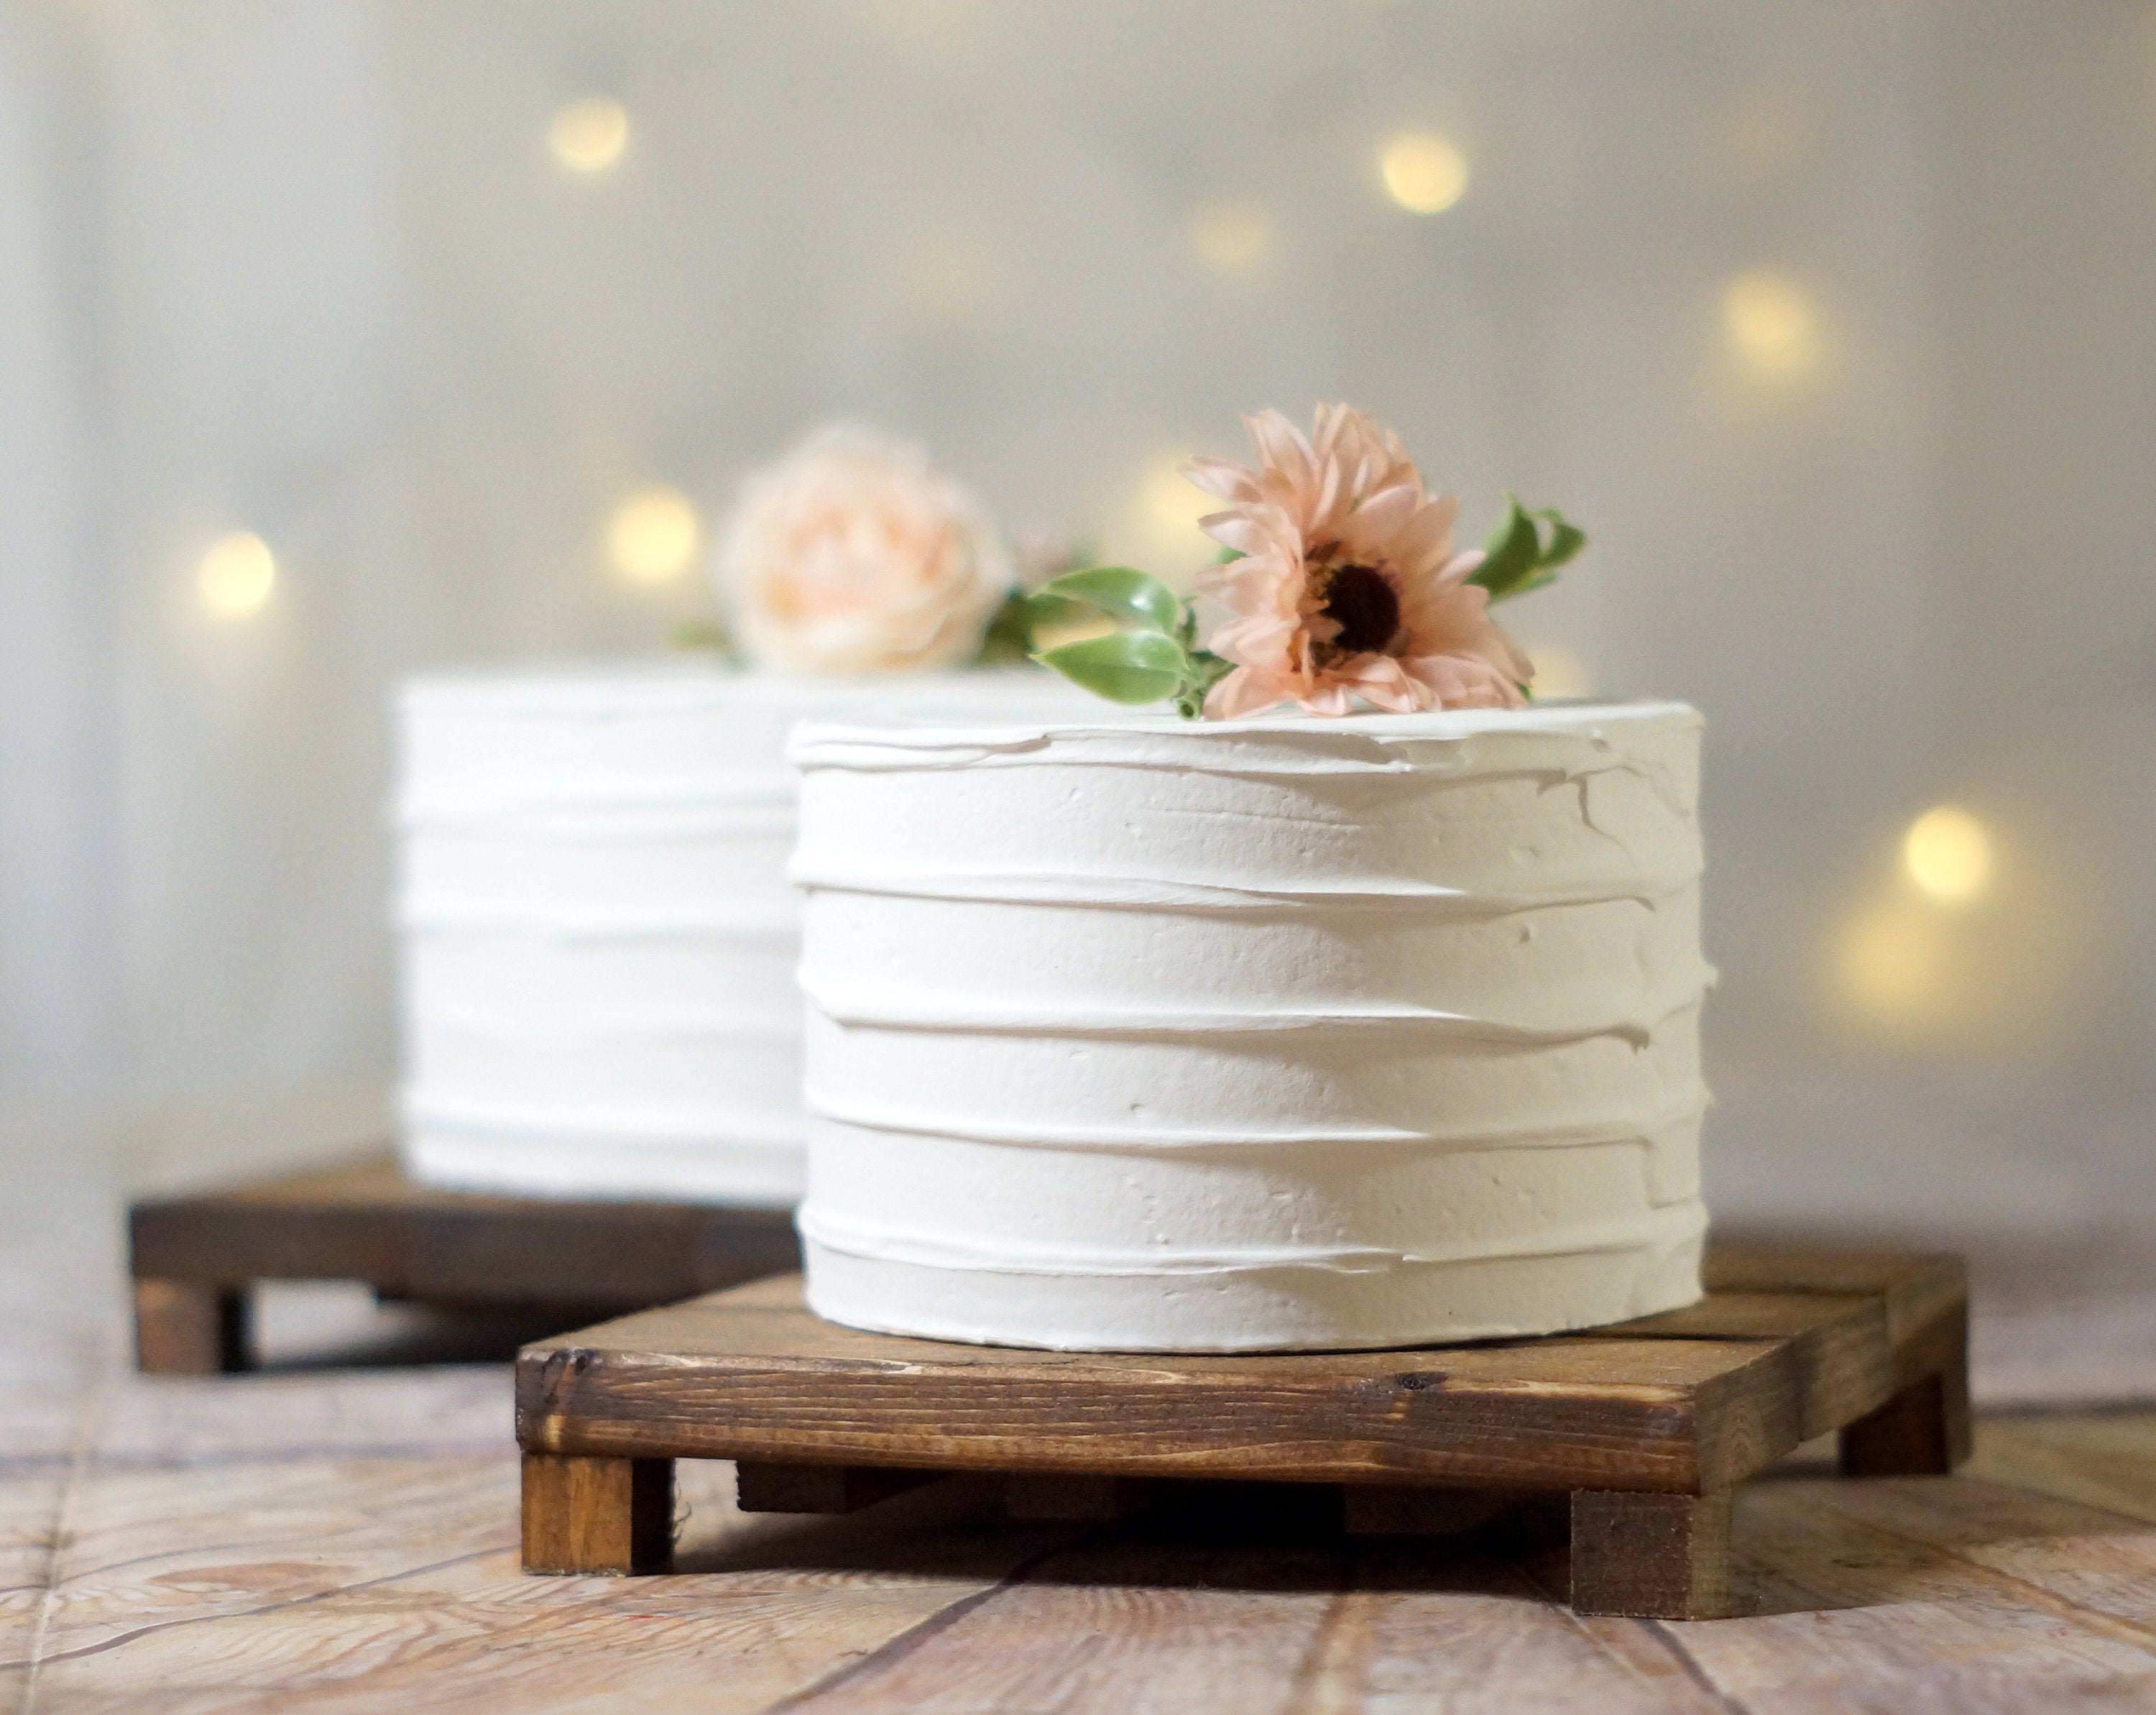 DIY Cake Stands For Entertaining or Decor - Mod Podge Rocks